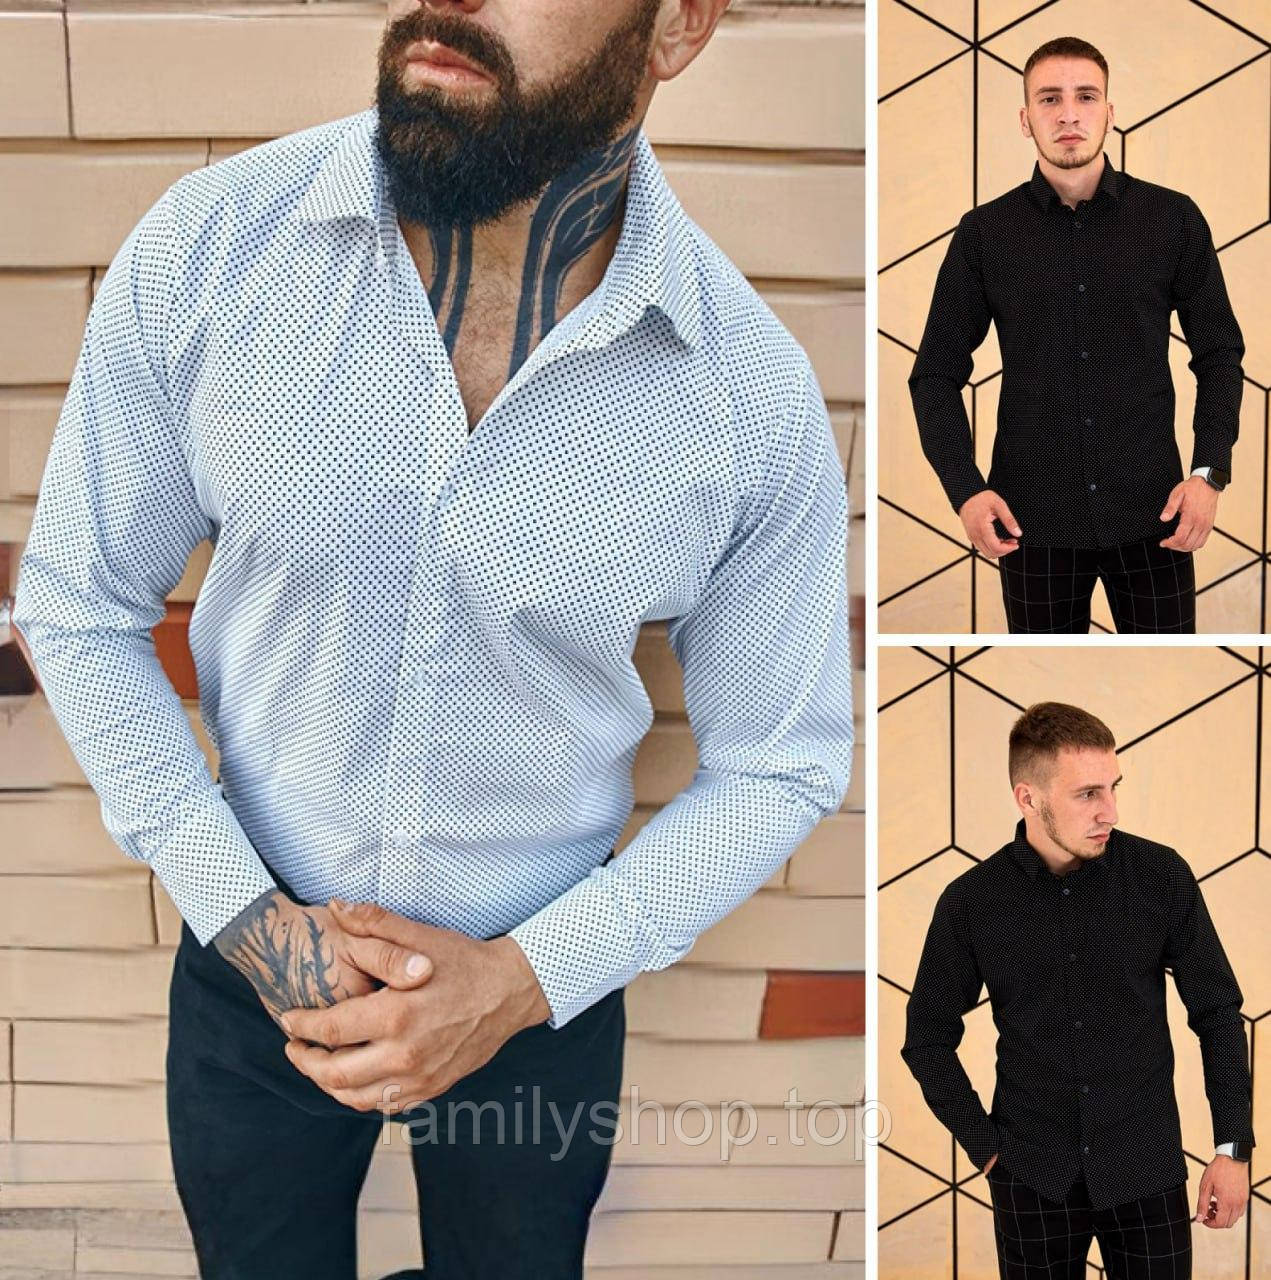 Чоловіча класична сорочка slim fit приталена бавовняна, біла, чорна, розмір S, M, L, XL